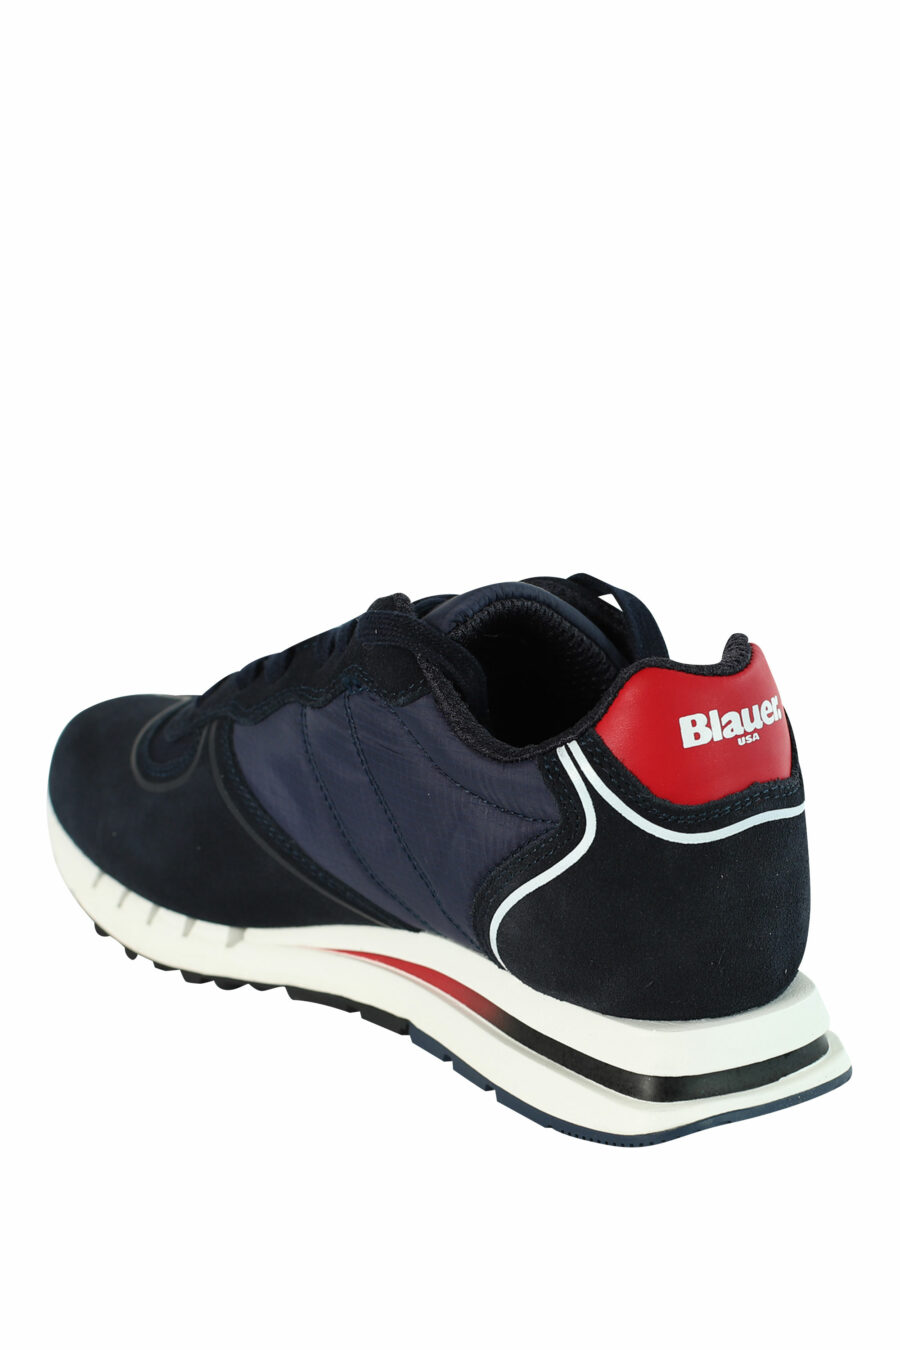 Zapatillas "QUARTZ" azules con detalles rojos - 8058156499454 4